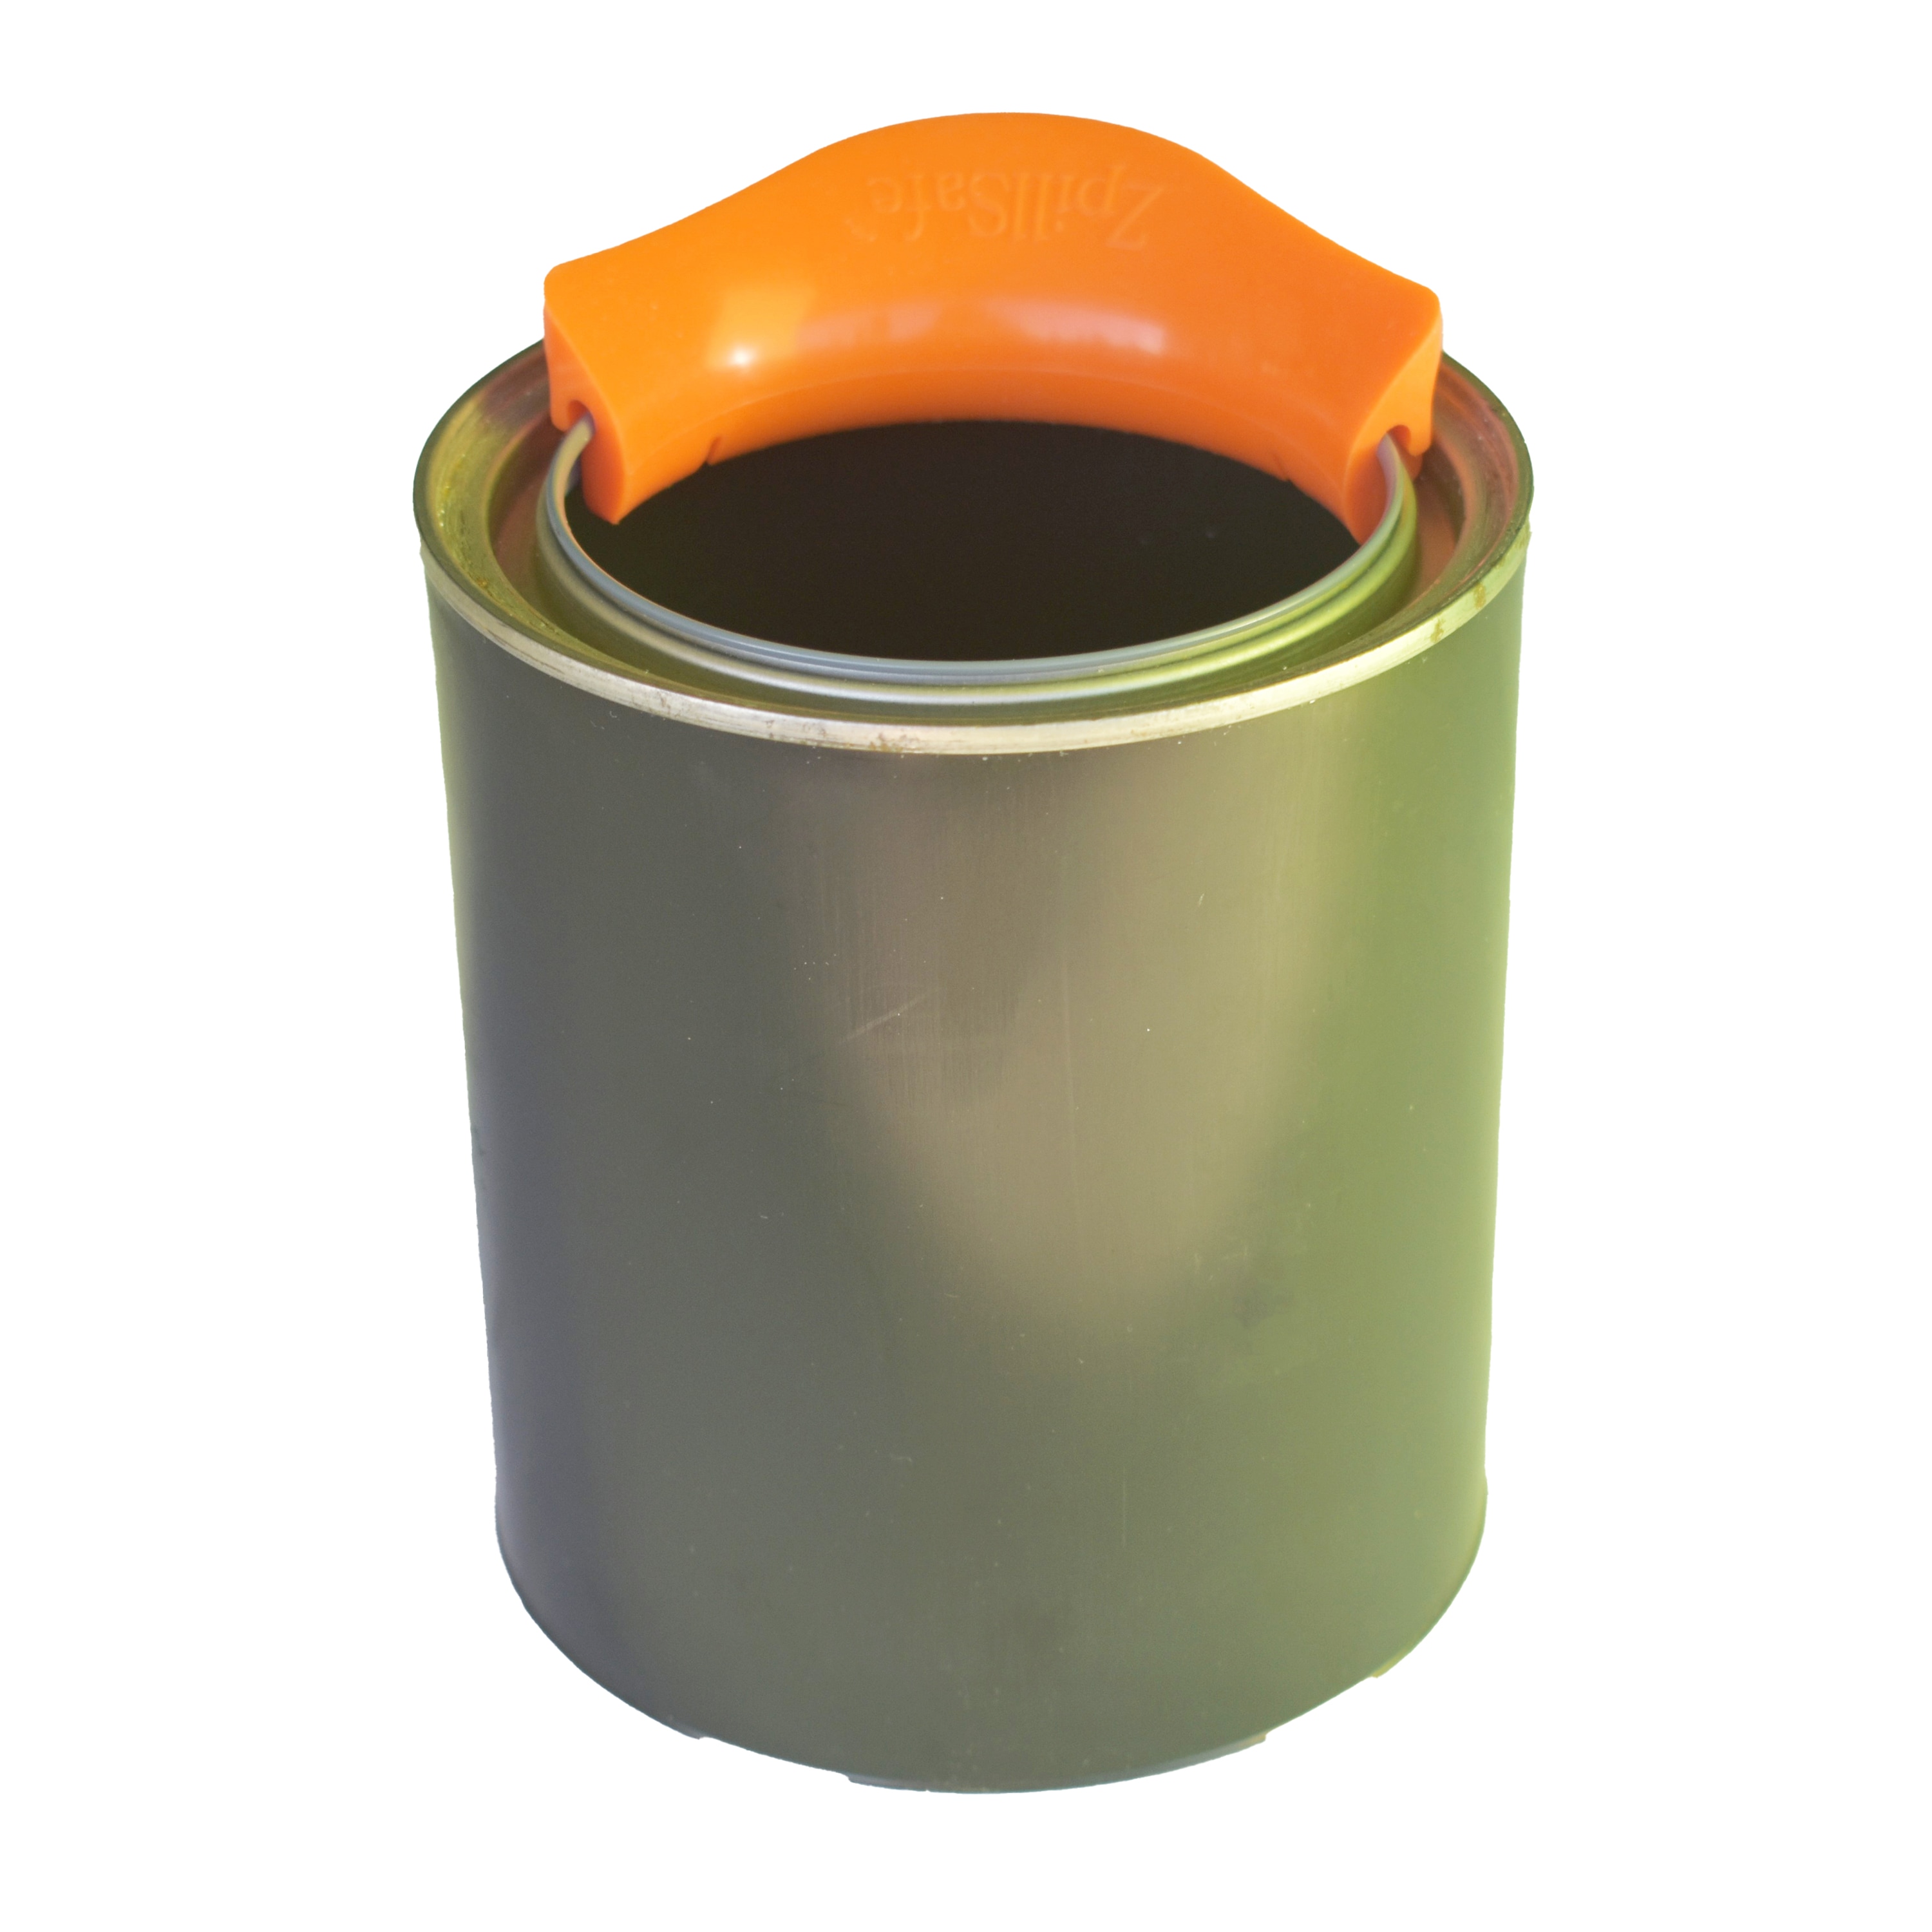 Project Source Bucket Lid Attachment Paint Can Pour Spout (Fits Bucket Size: 5-Gallon)